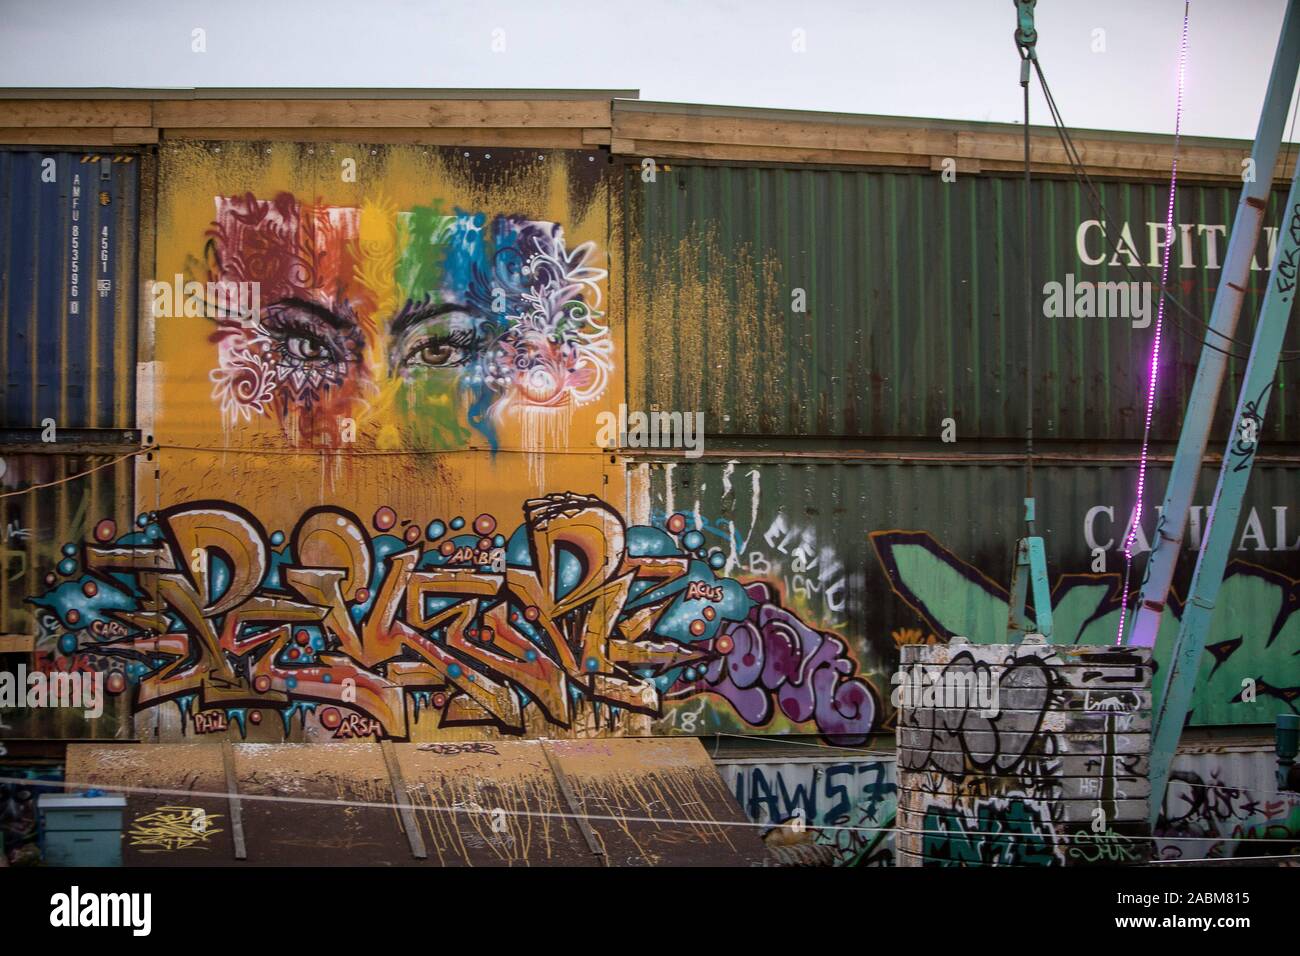 Voitures de chemin de fer pulvérisé avec graffiti dans la station keeper Thiel. [Traduction automatique] Banque D'Images